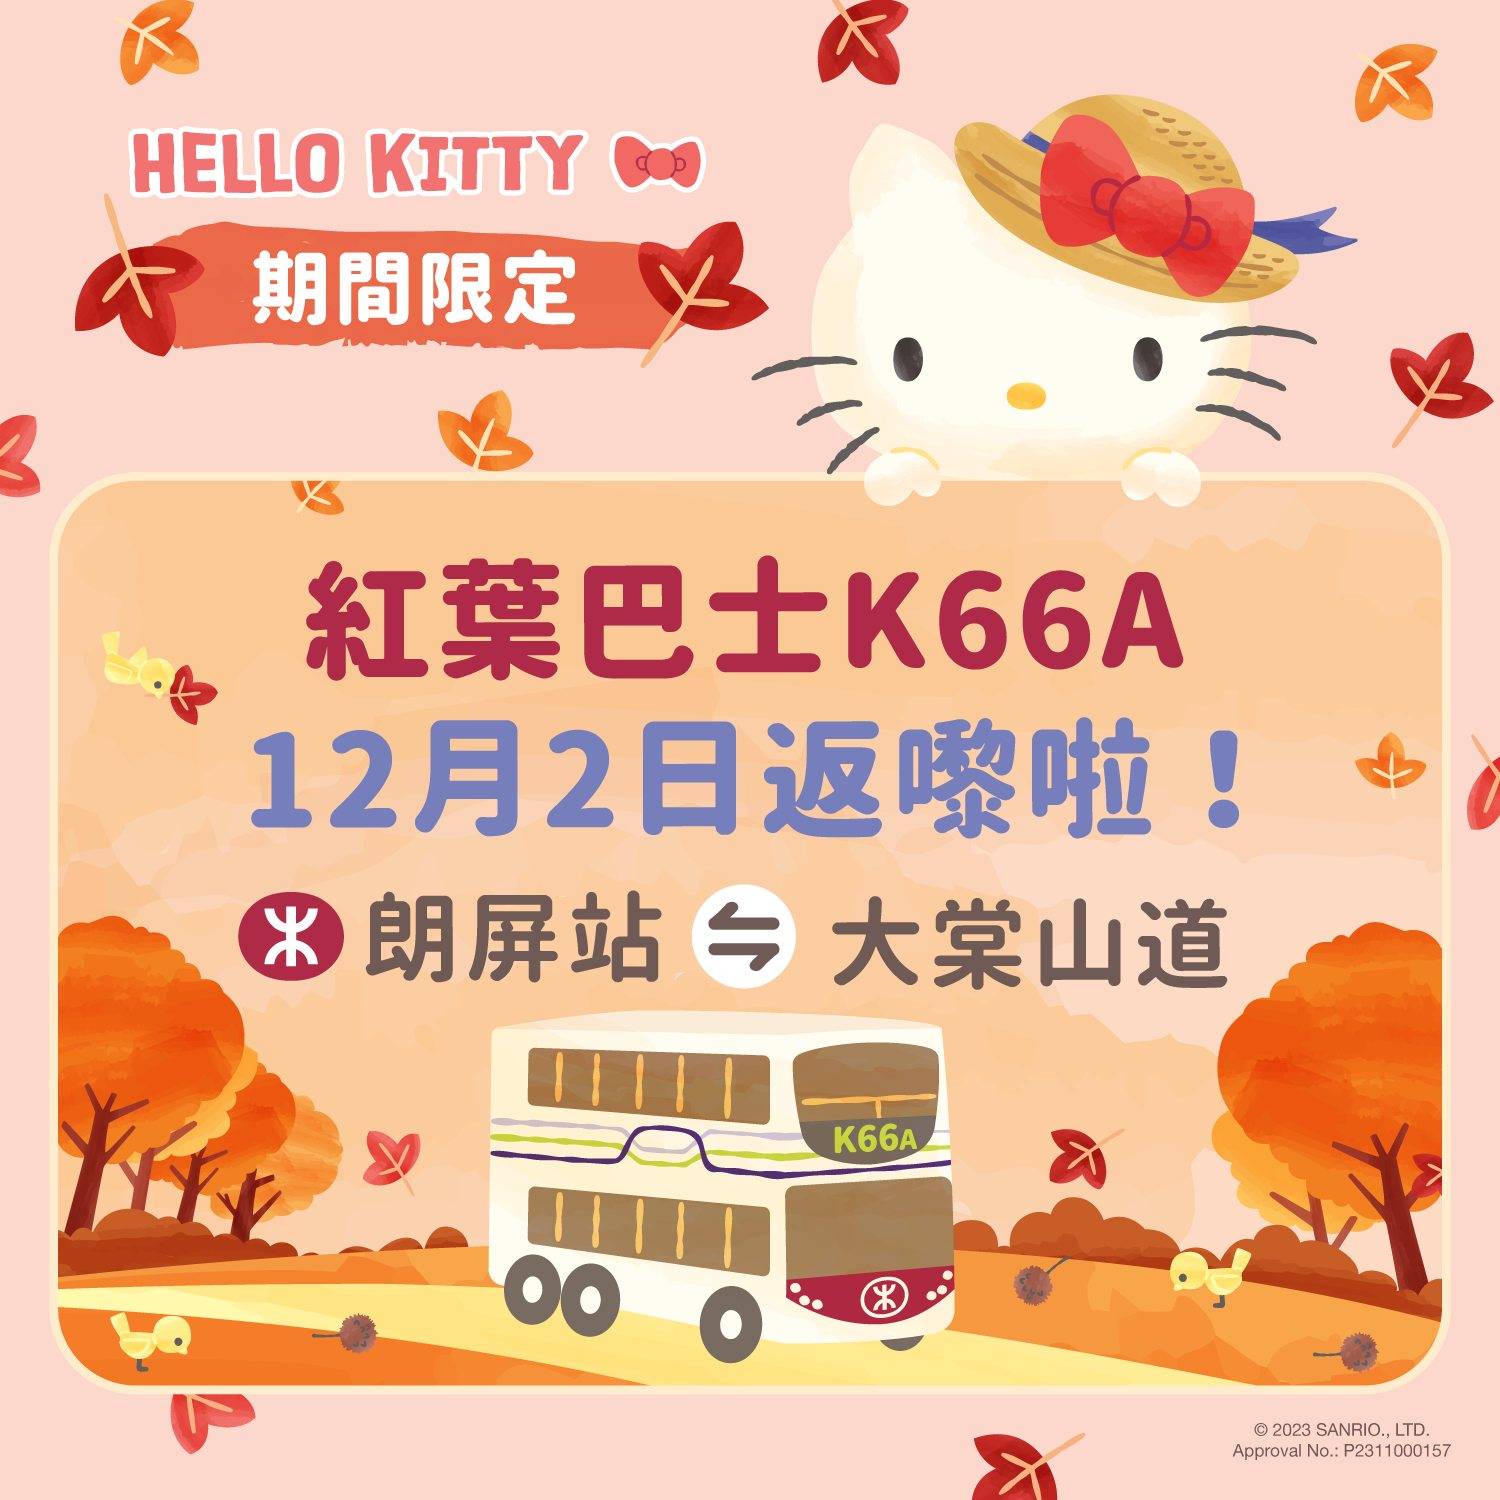 大棠紅葉 今年的紅葉巴士K66A與Hello Kitty合作。